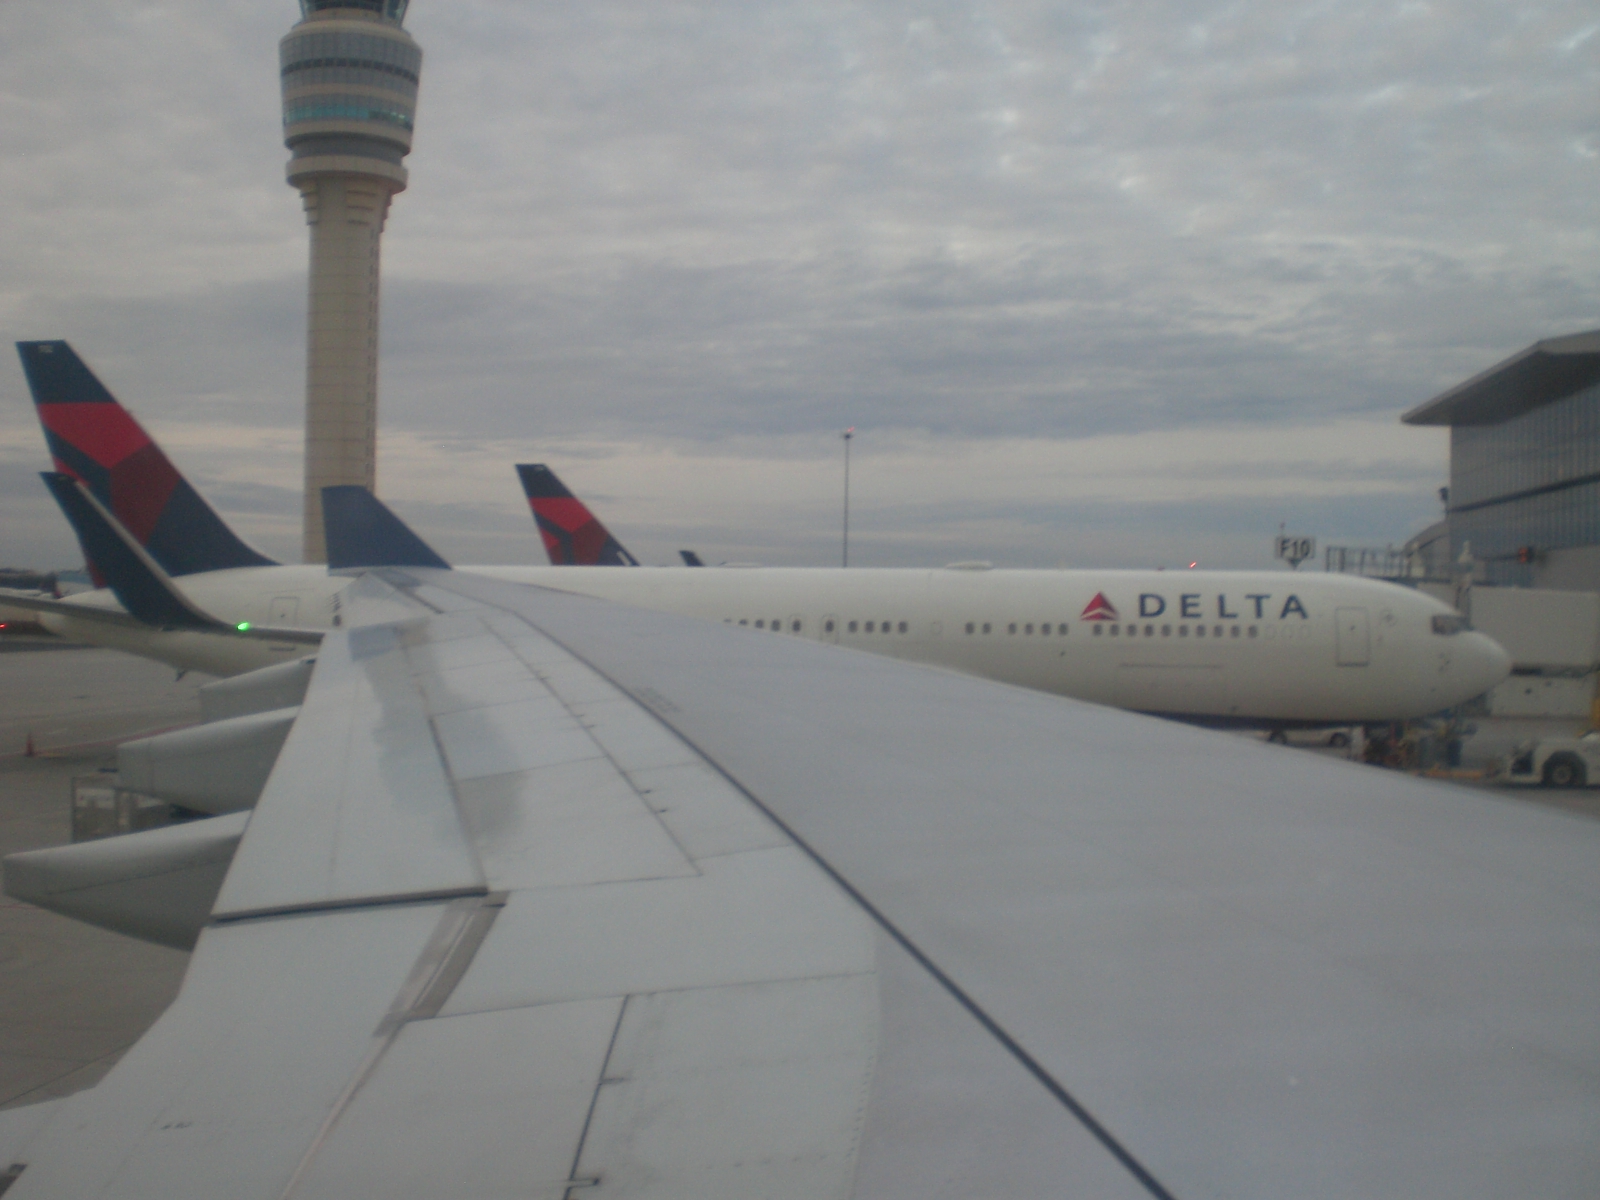 Ich weiß nicht, ob es die gleiche Maschine war, die ich hier von meinem Flugzeug aus fotografiert habe...Hauptsache Delta!!!